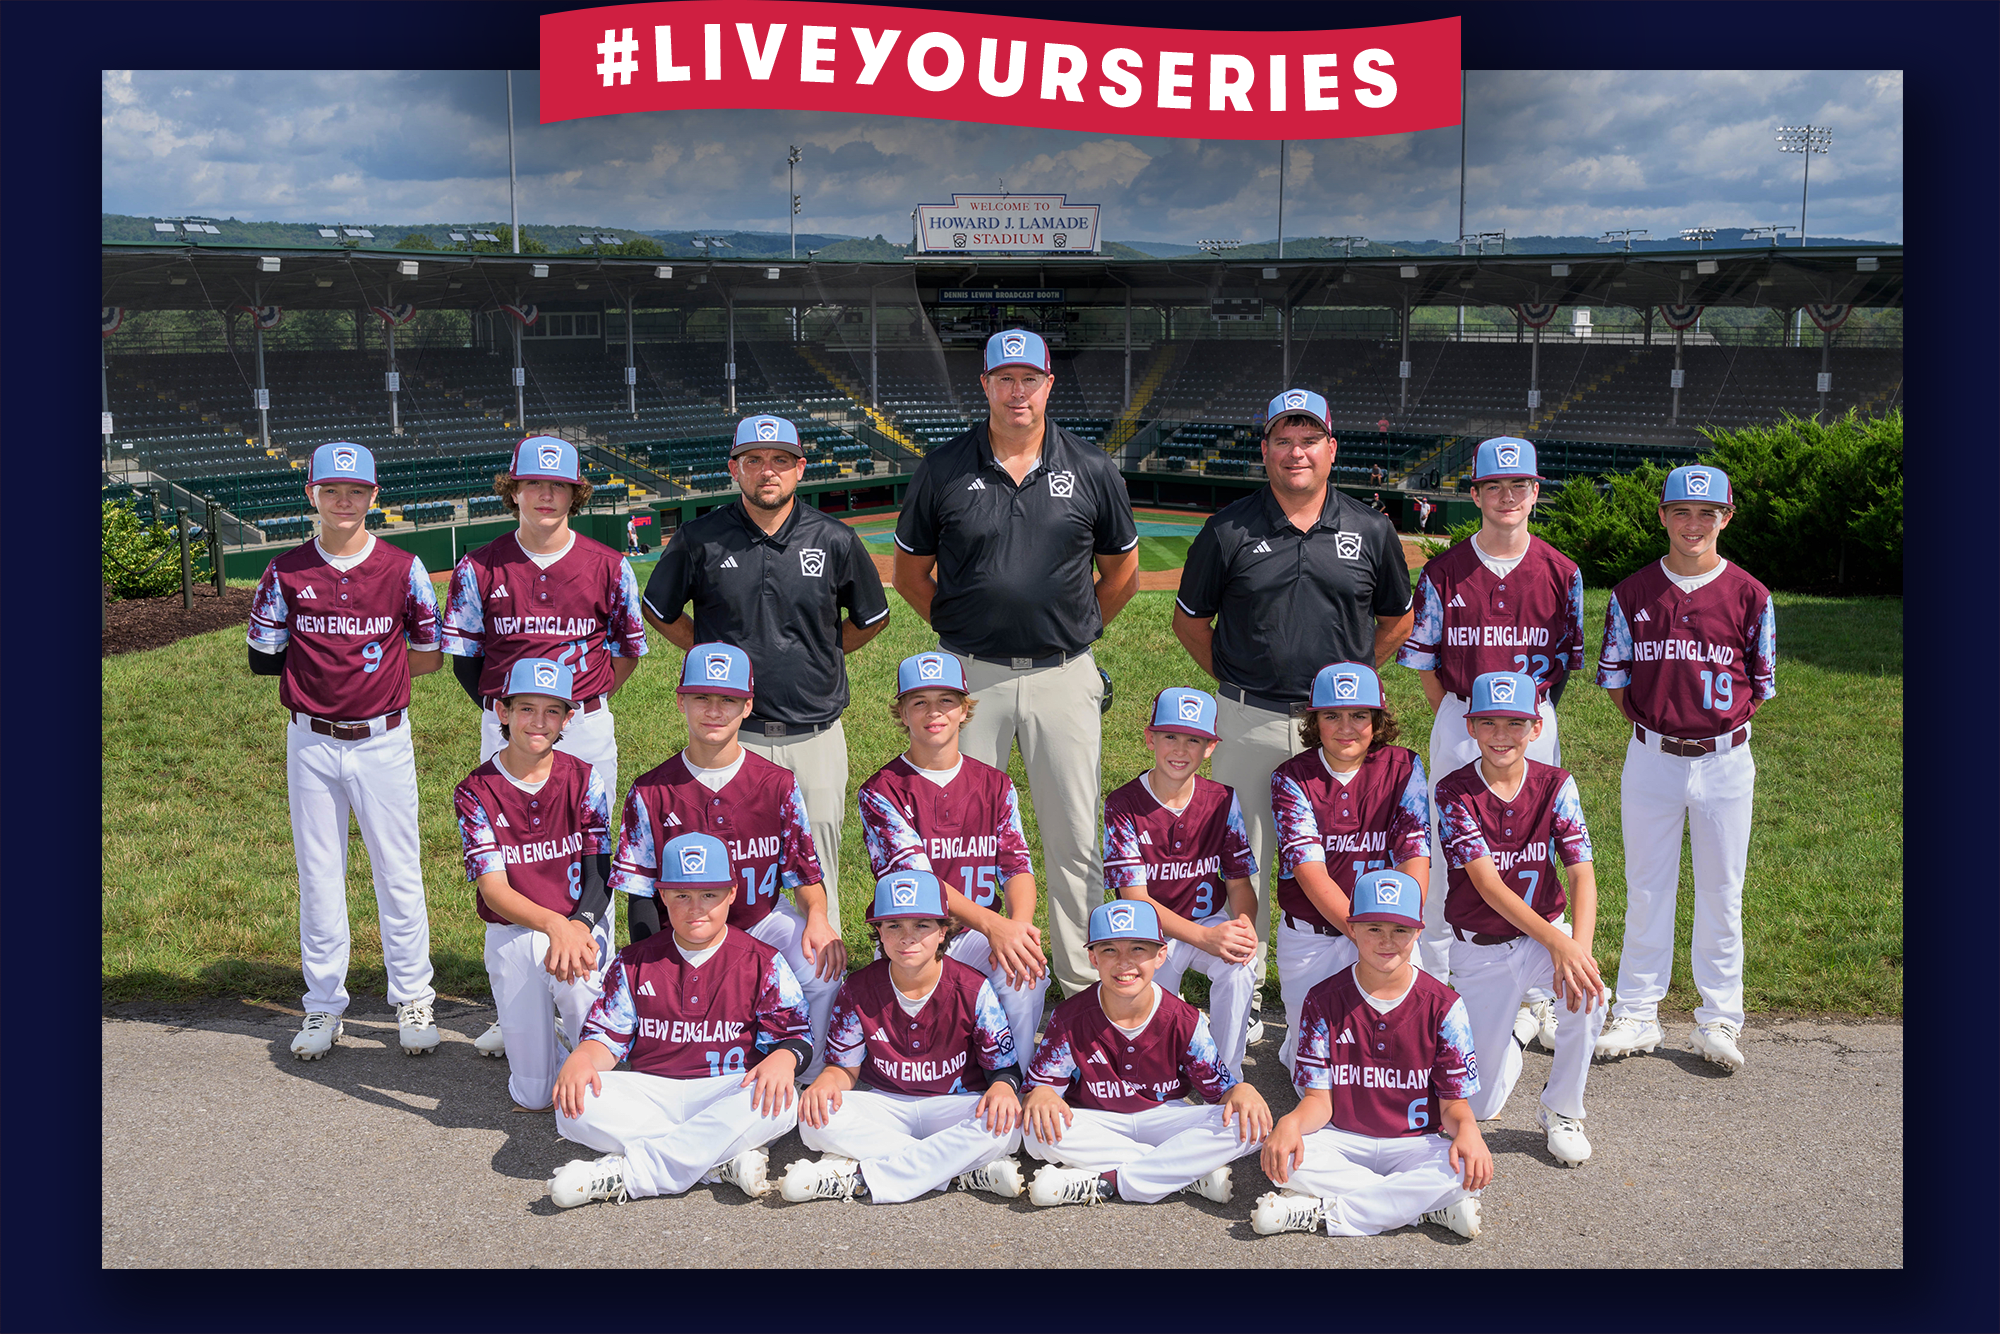 Little League World Series team from Michigan: Meet the boys